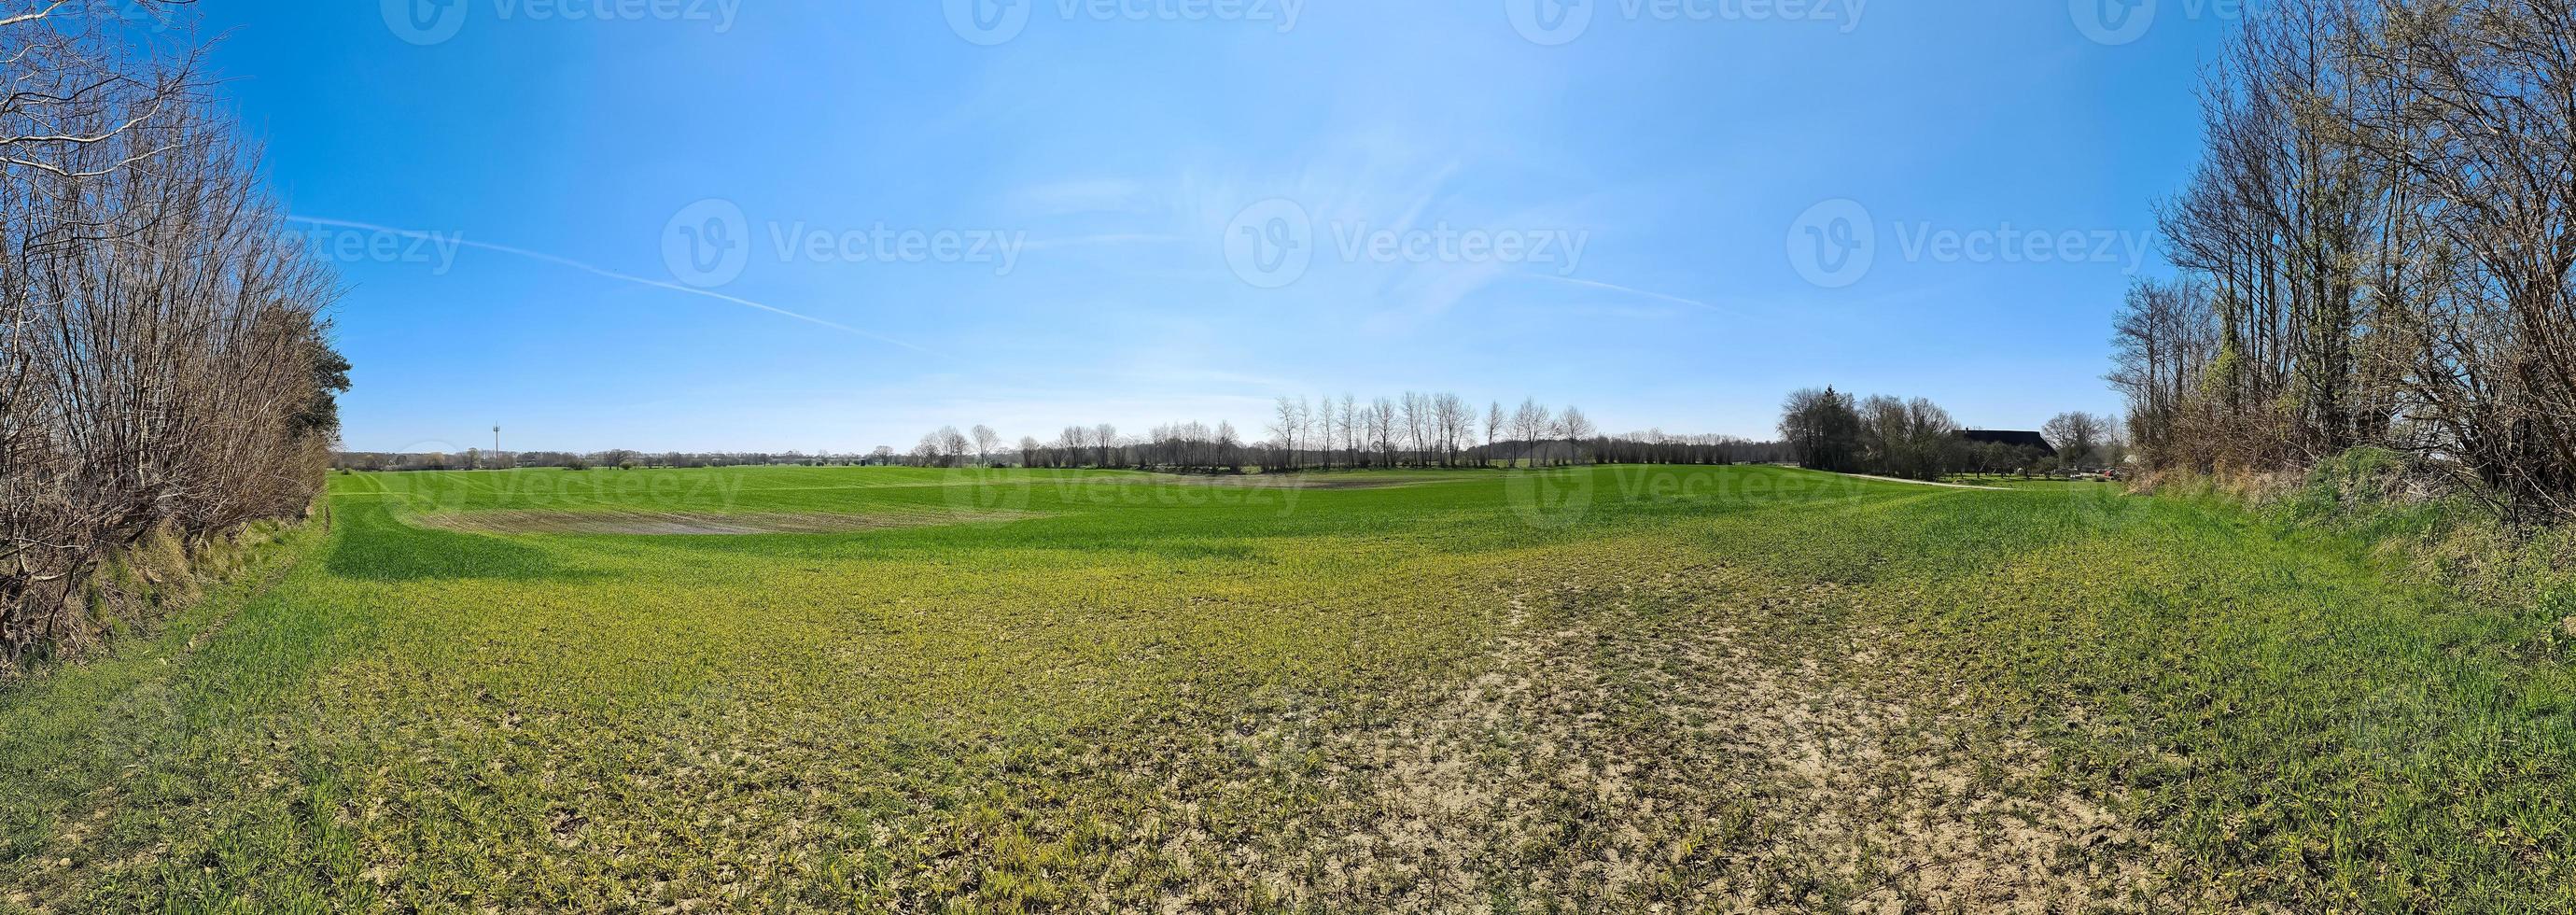 panorama av ett nordeuropeiskt landslandskap med fält och grönt gräs. foto